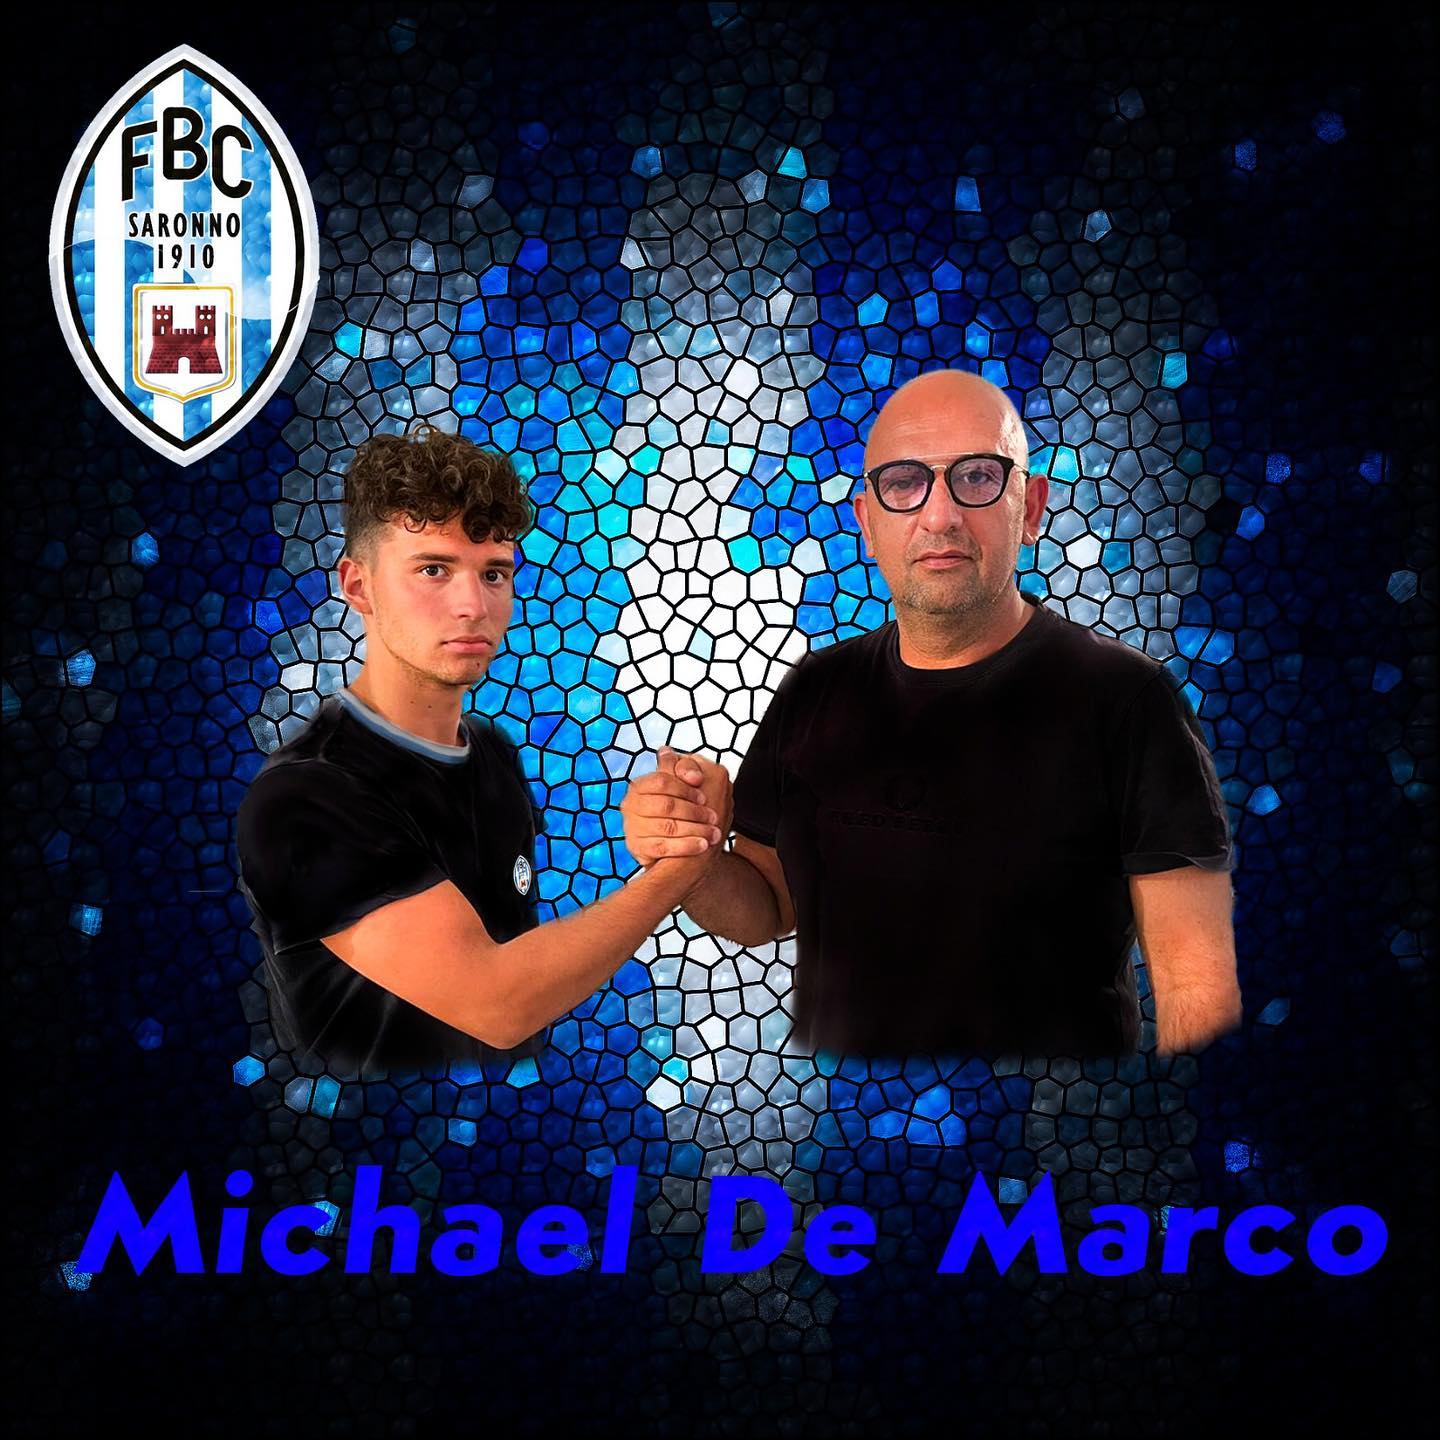 Calcio mercato, il giovane De Marco dall’Eccellenza al Fbc Saronno